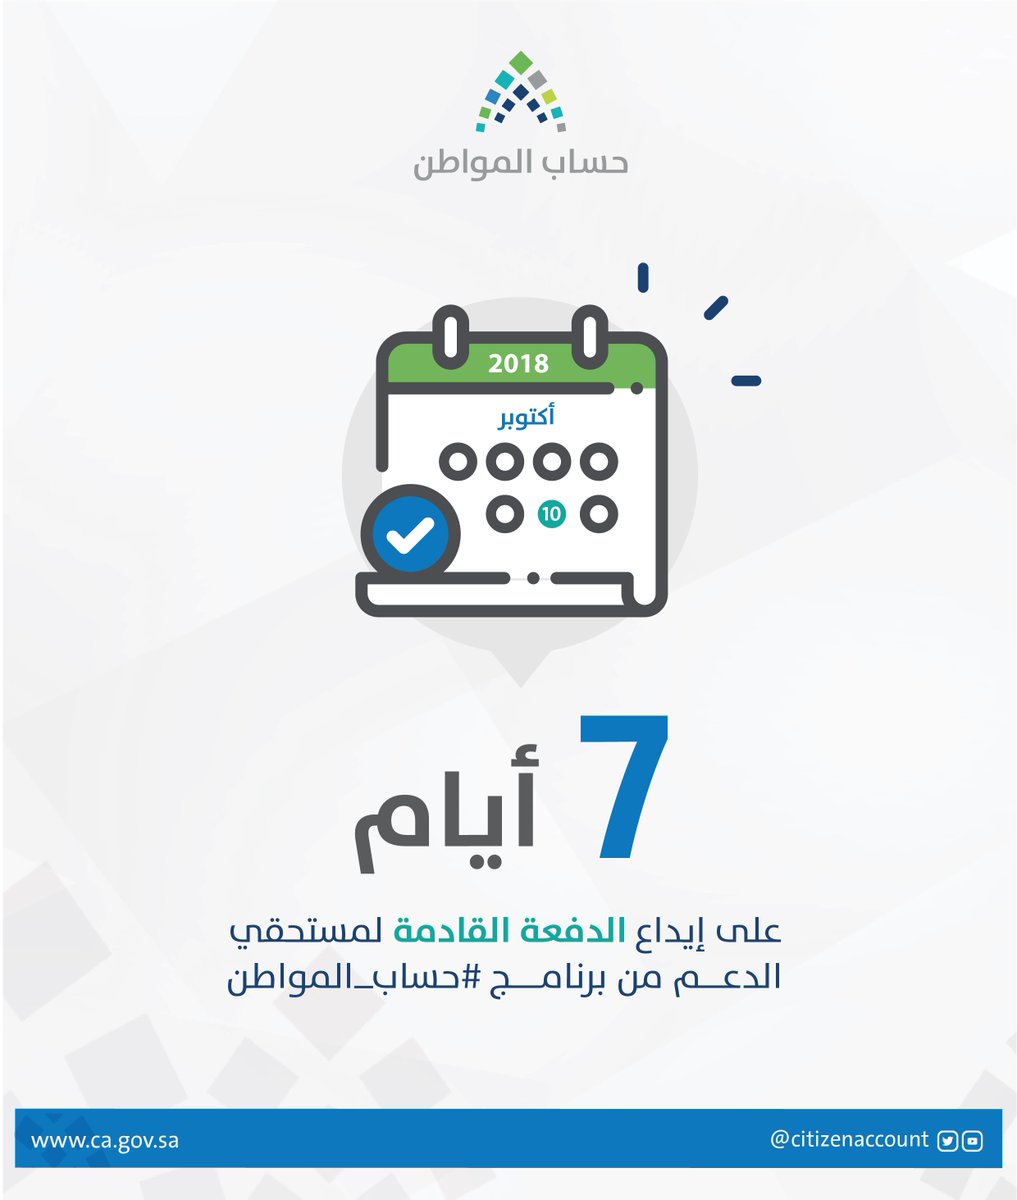 حساب المواطن Twitterissa تبقى 7 أيام على إيداع الدفعة الحادية عشر شهر أكتوبر لمستحقي الدعم من برنامج حساب المواطن